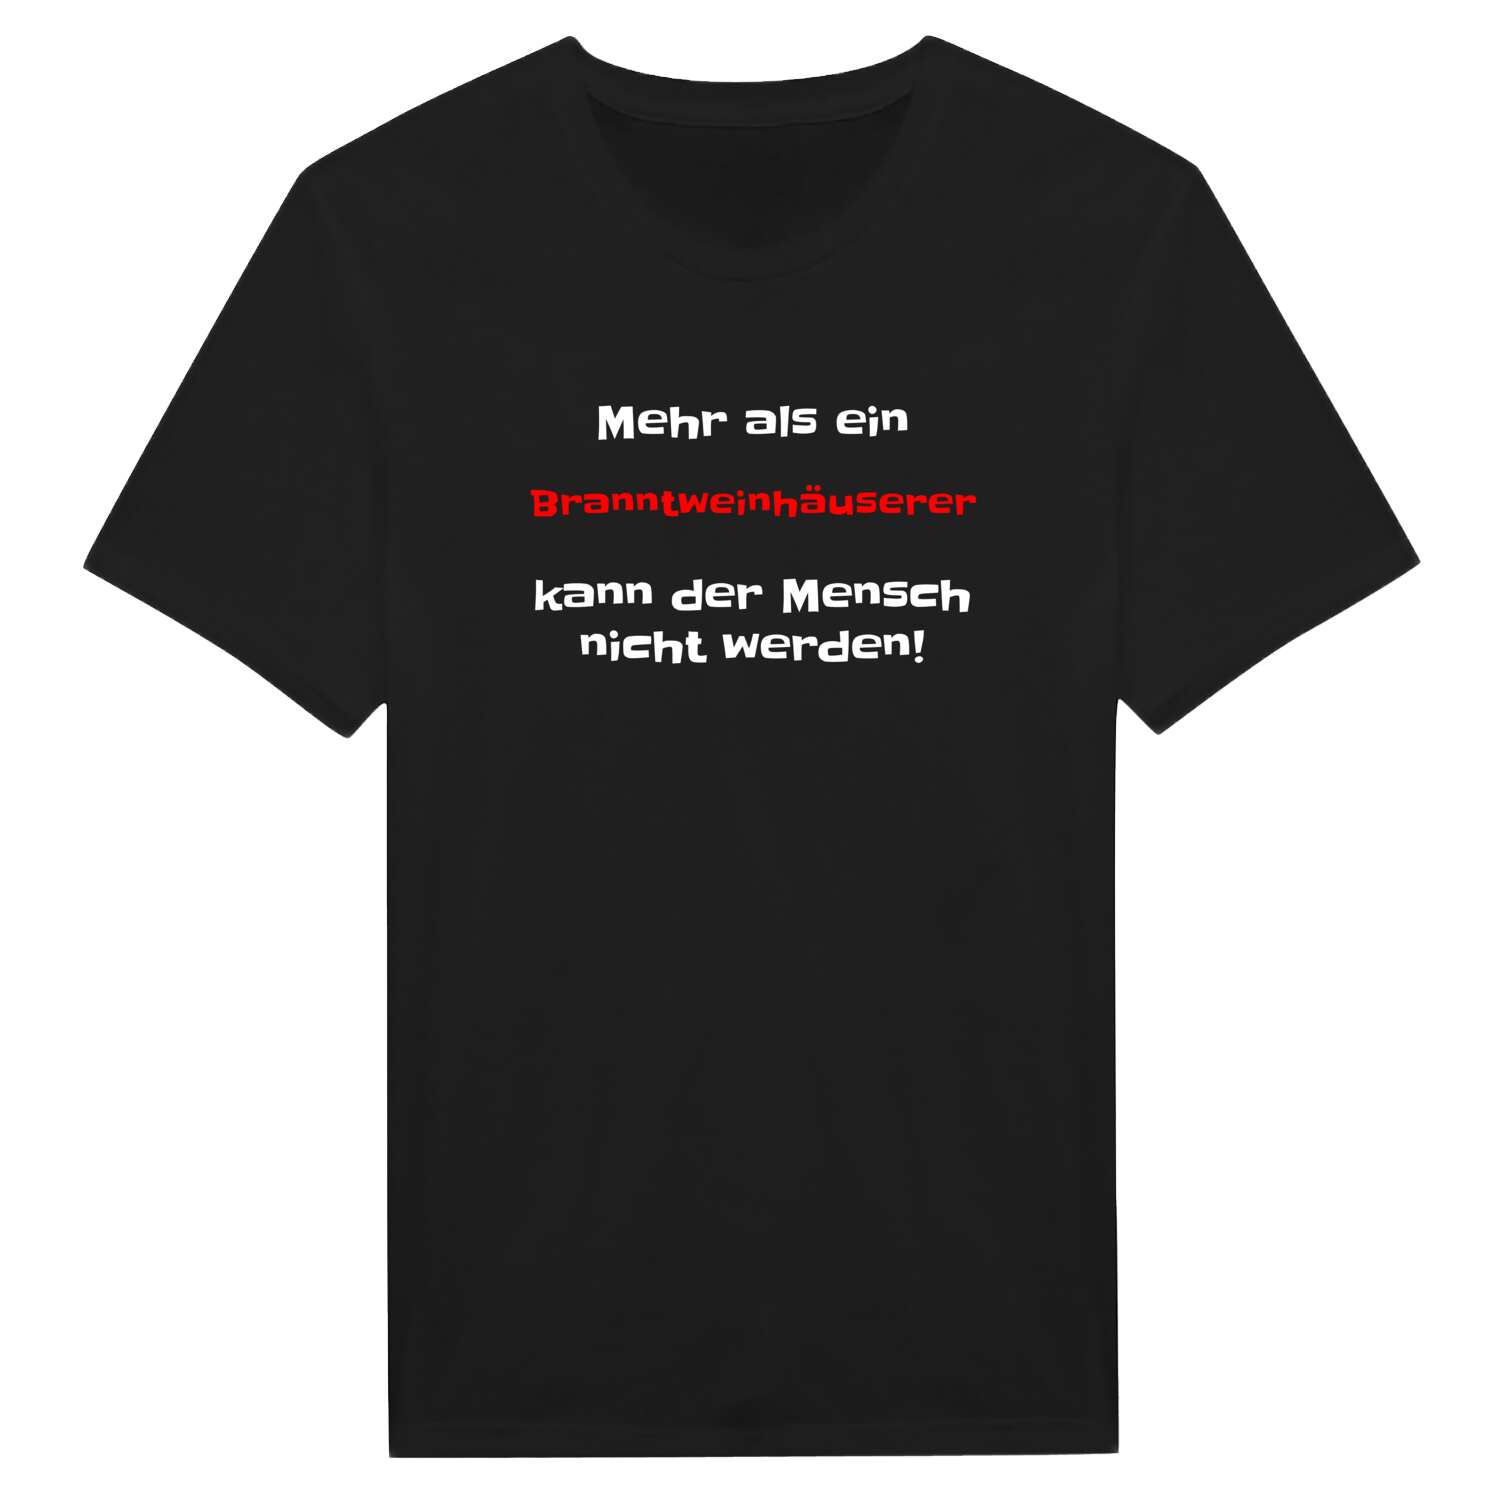 Branntweinhäuser T-Shirt »Mehr als ein«